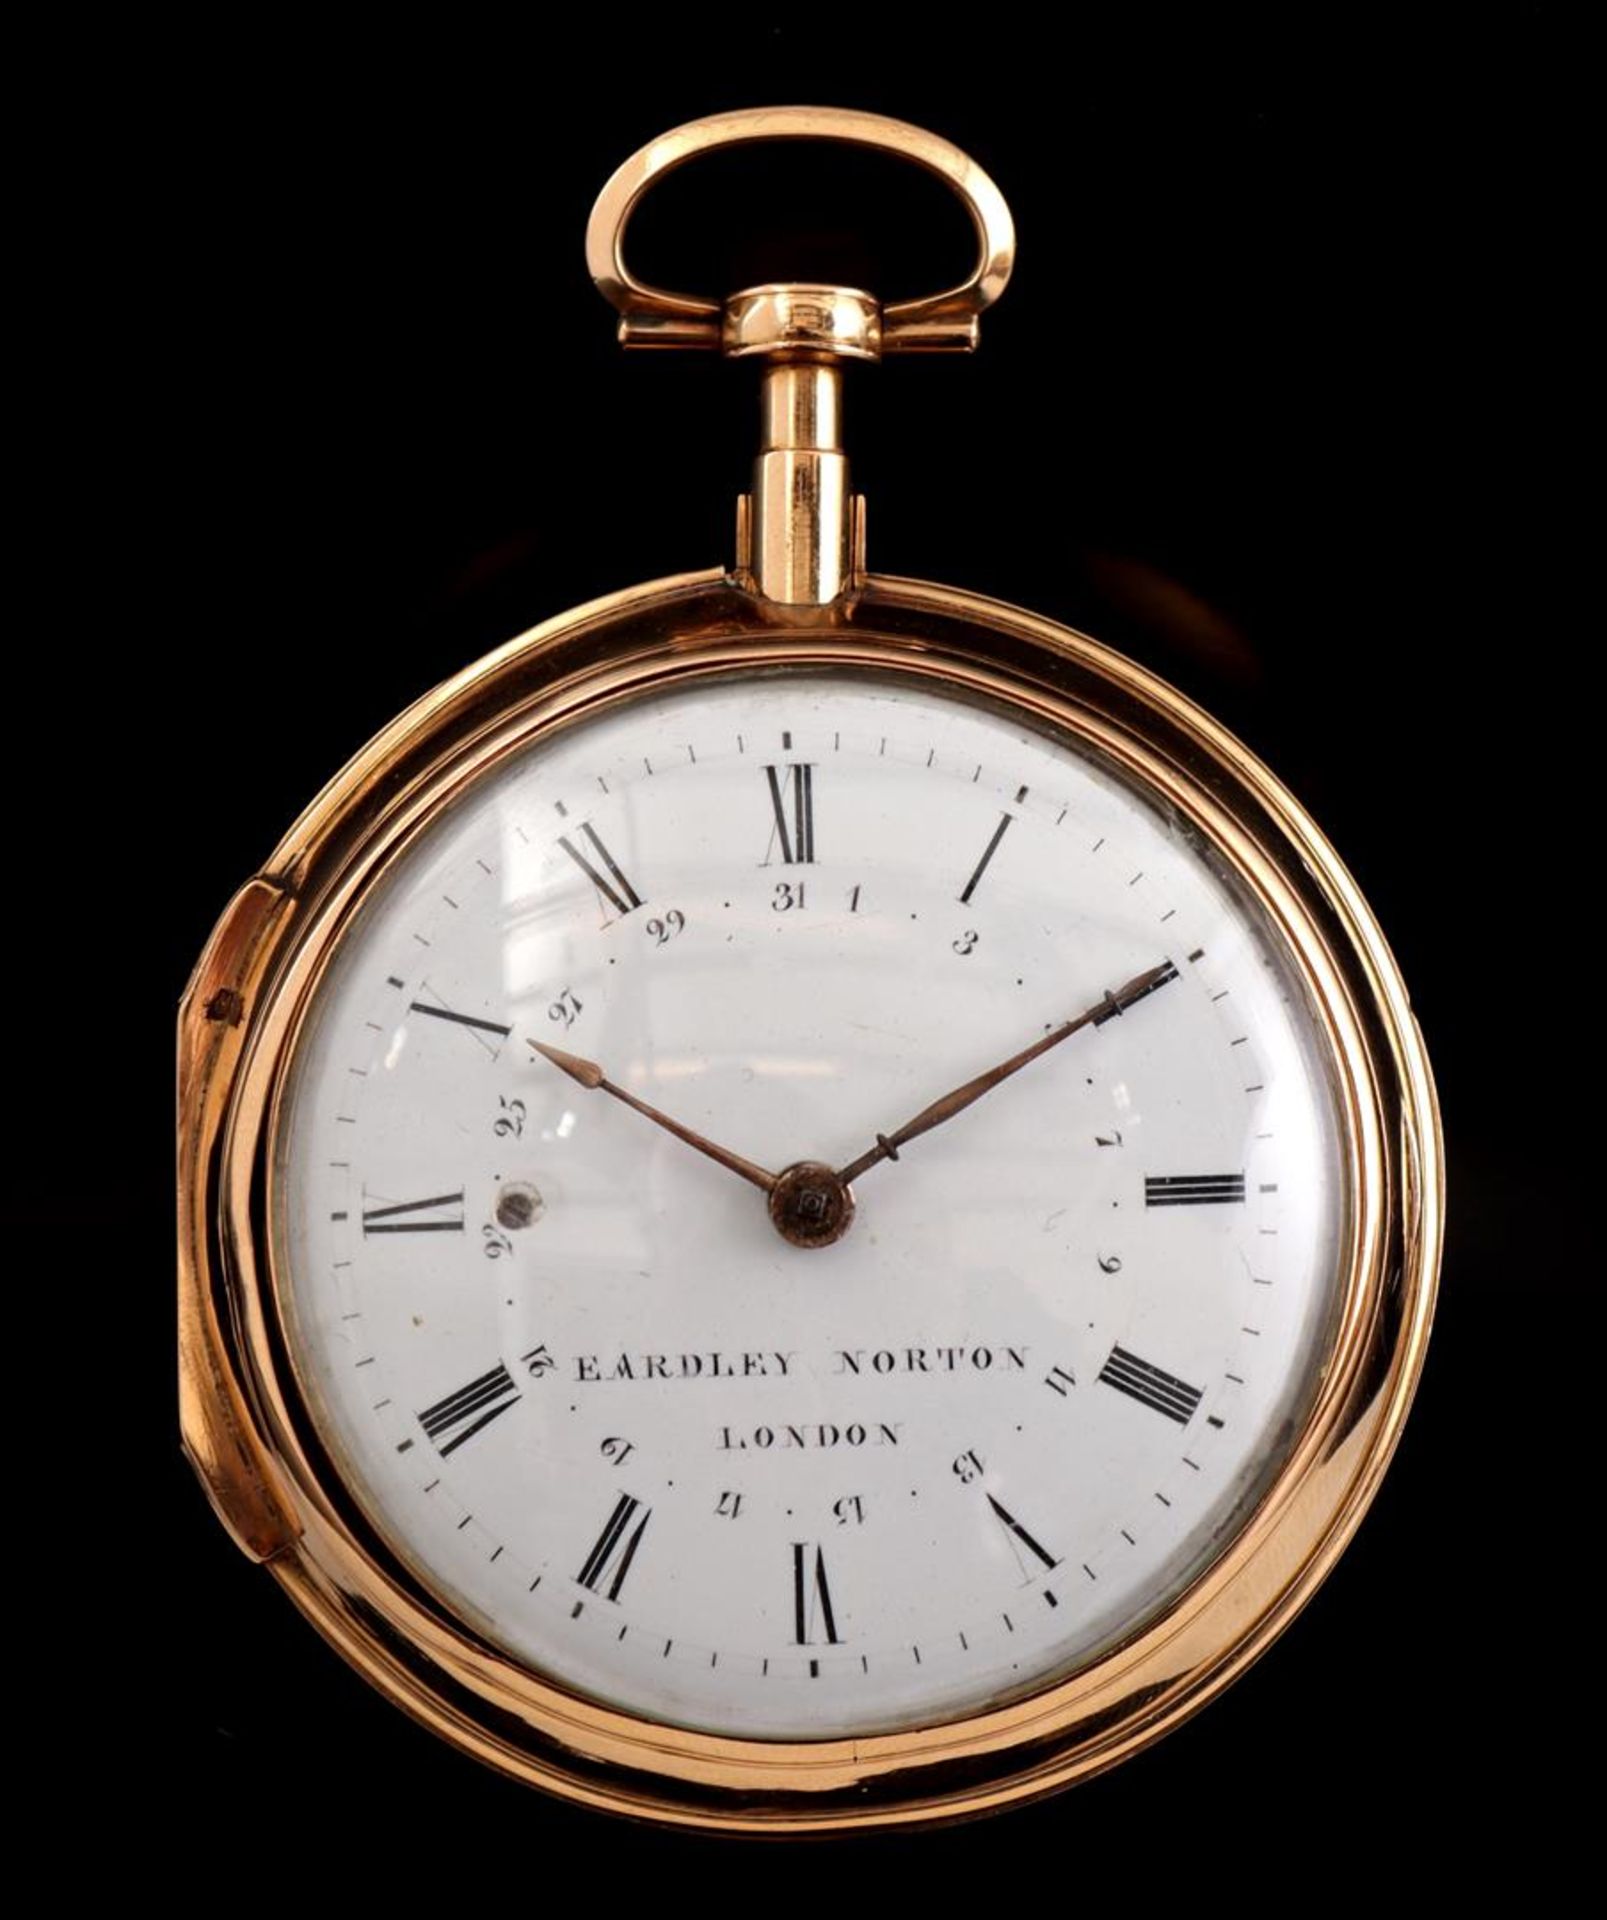 Eardley Norton London pocket watch